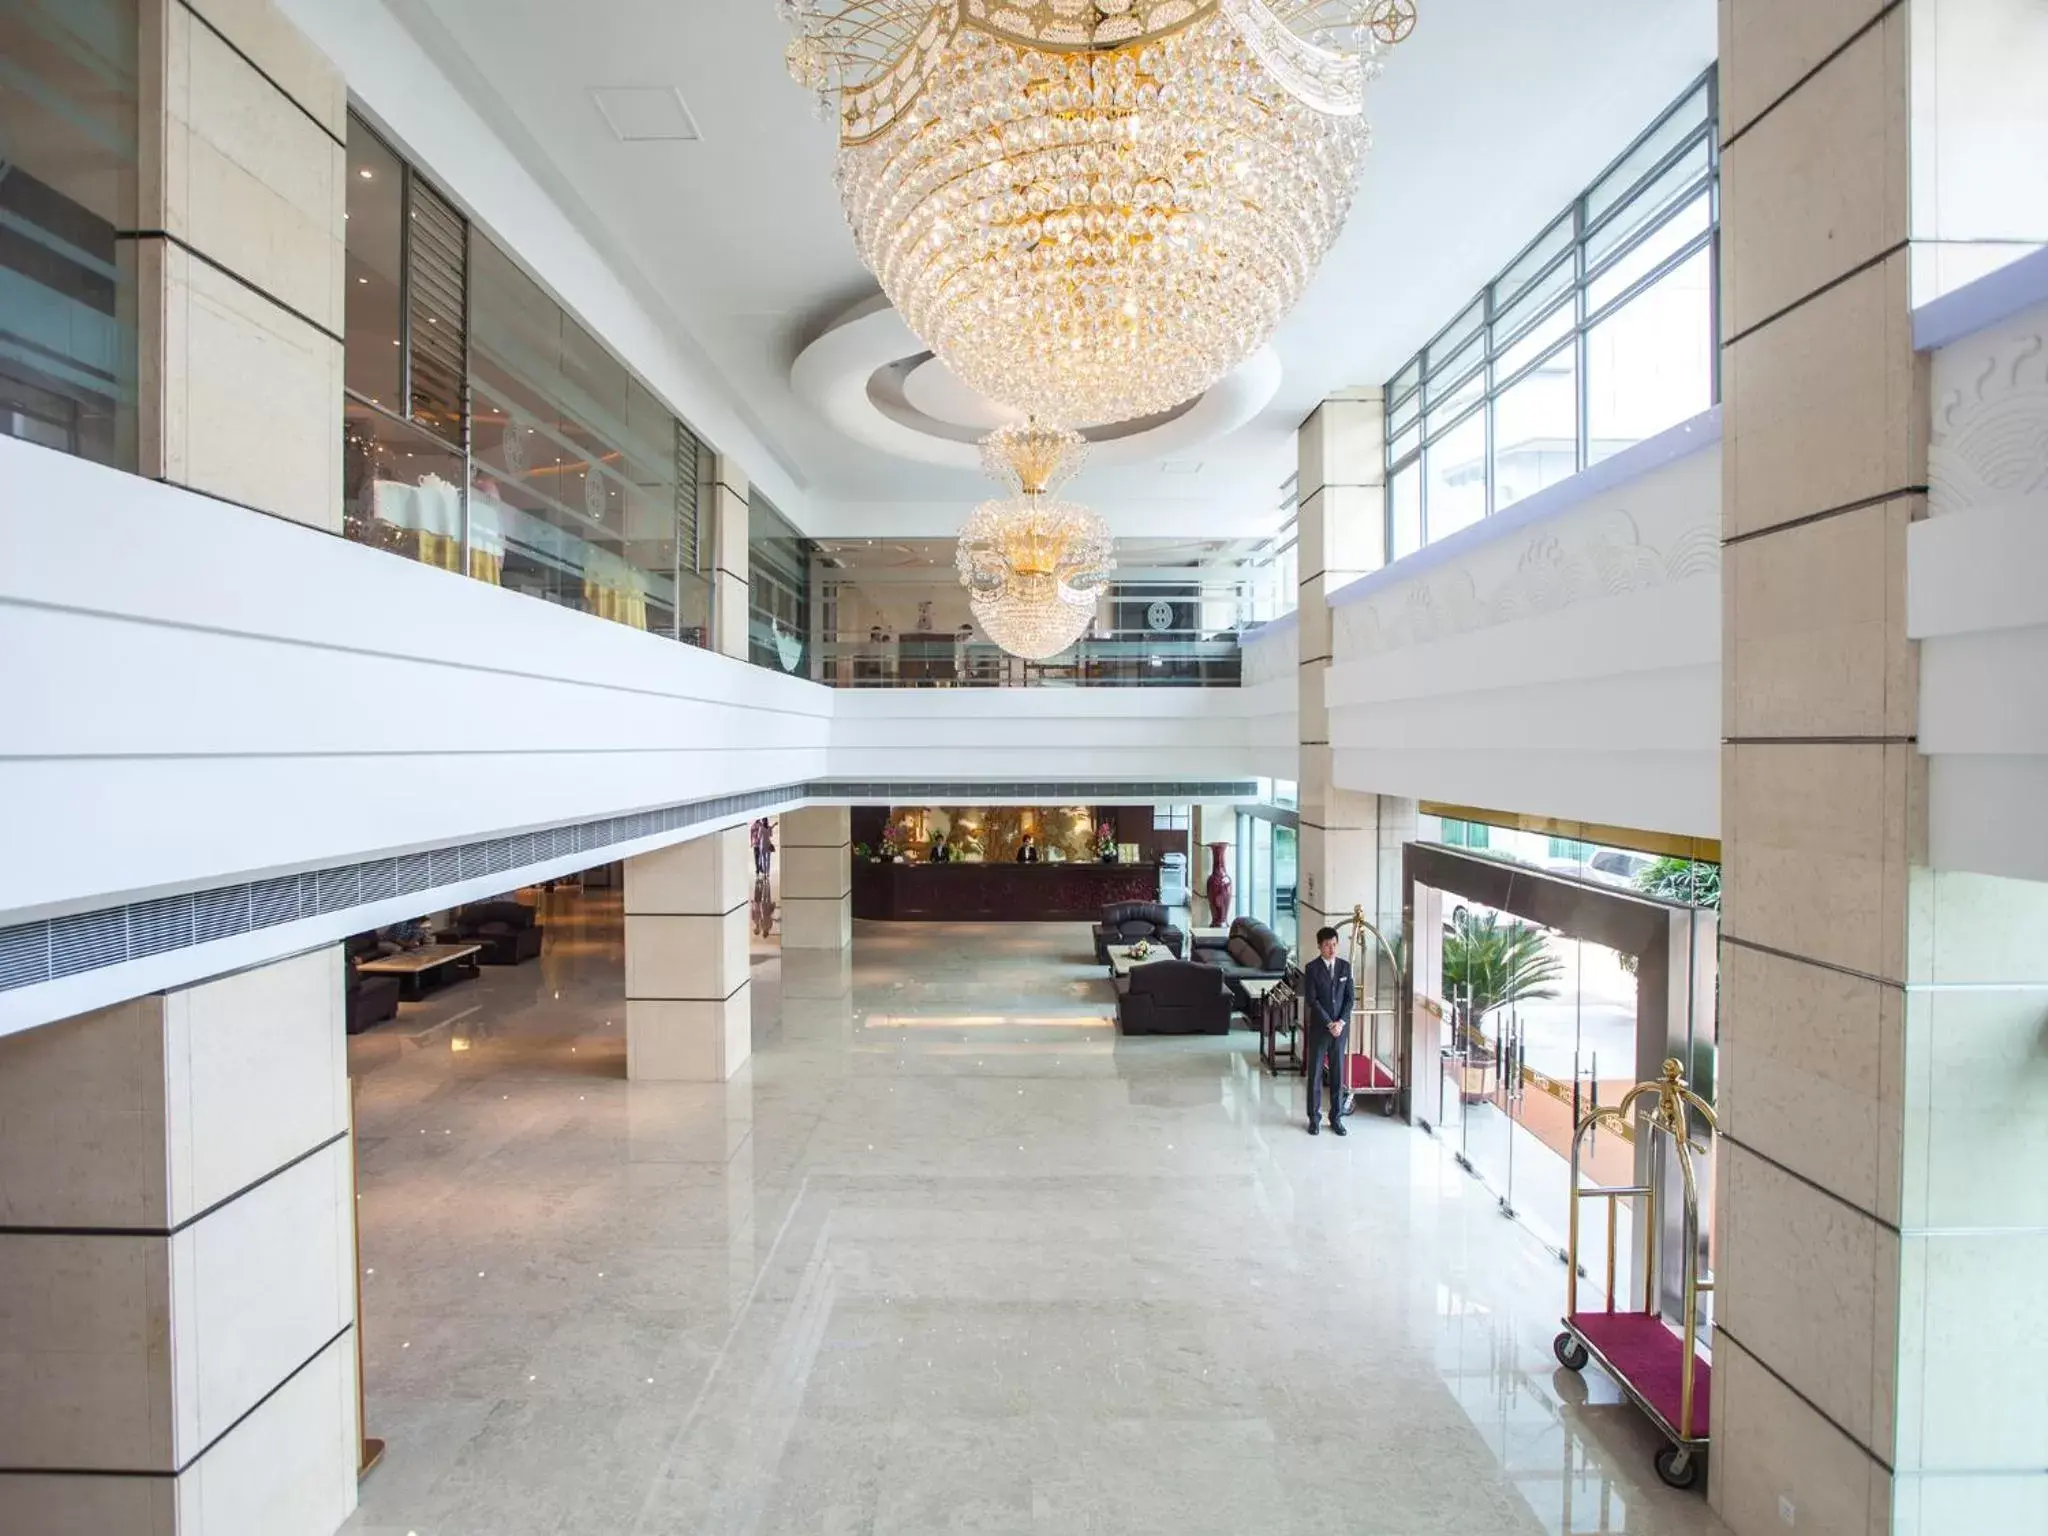 Lobby or reception in Hua Shi Hotel